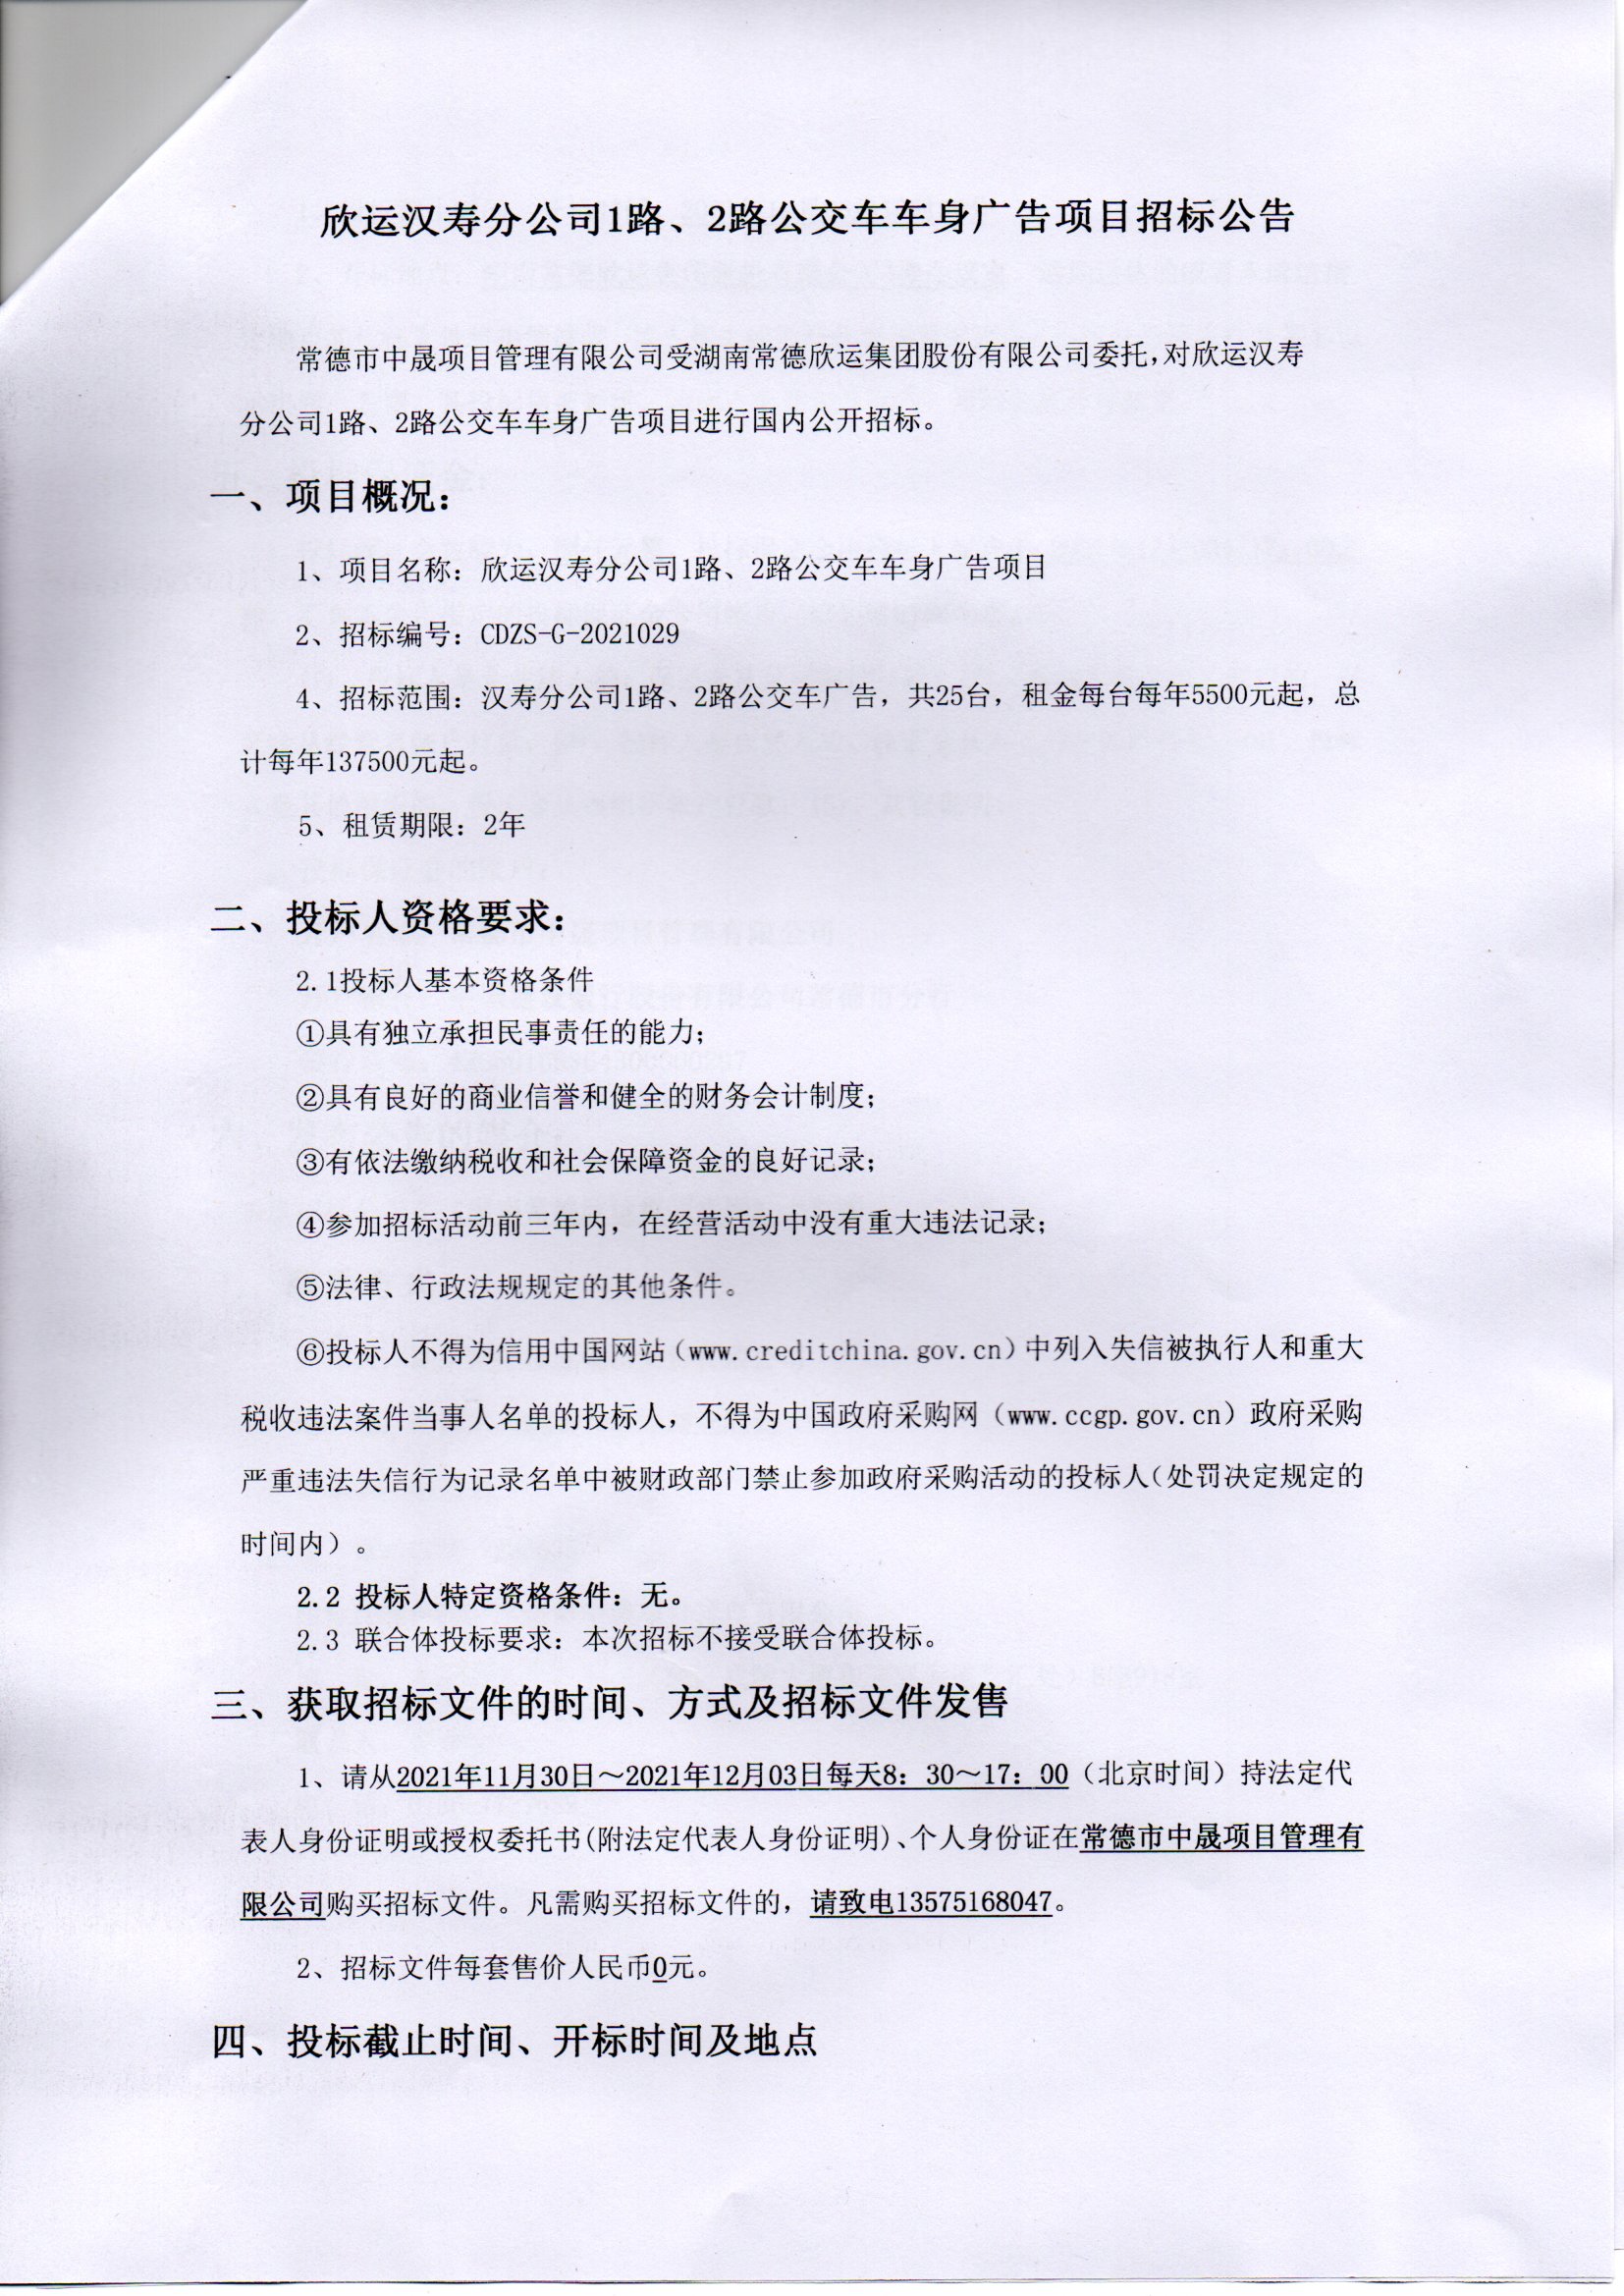 欣运汉寿分公司1路、2路公交车车身广告项目招标公告(图1)